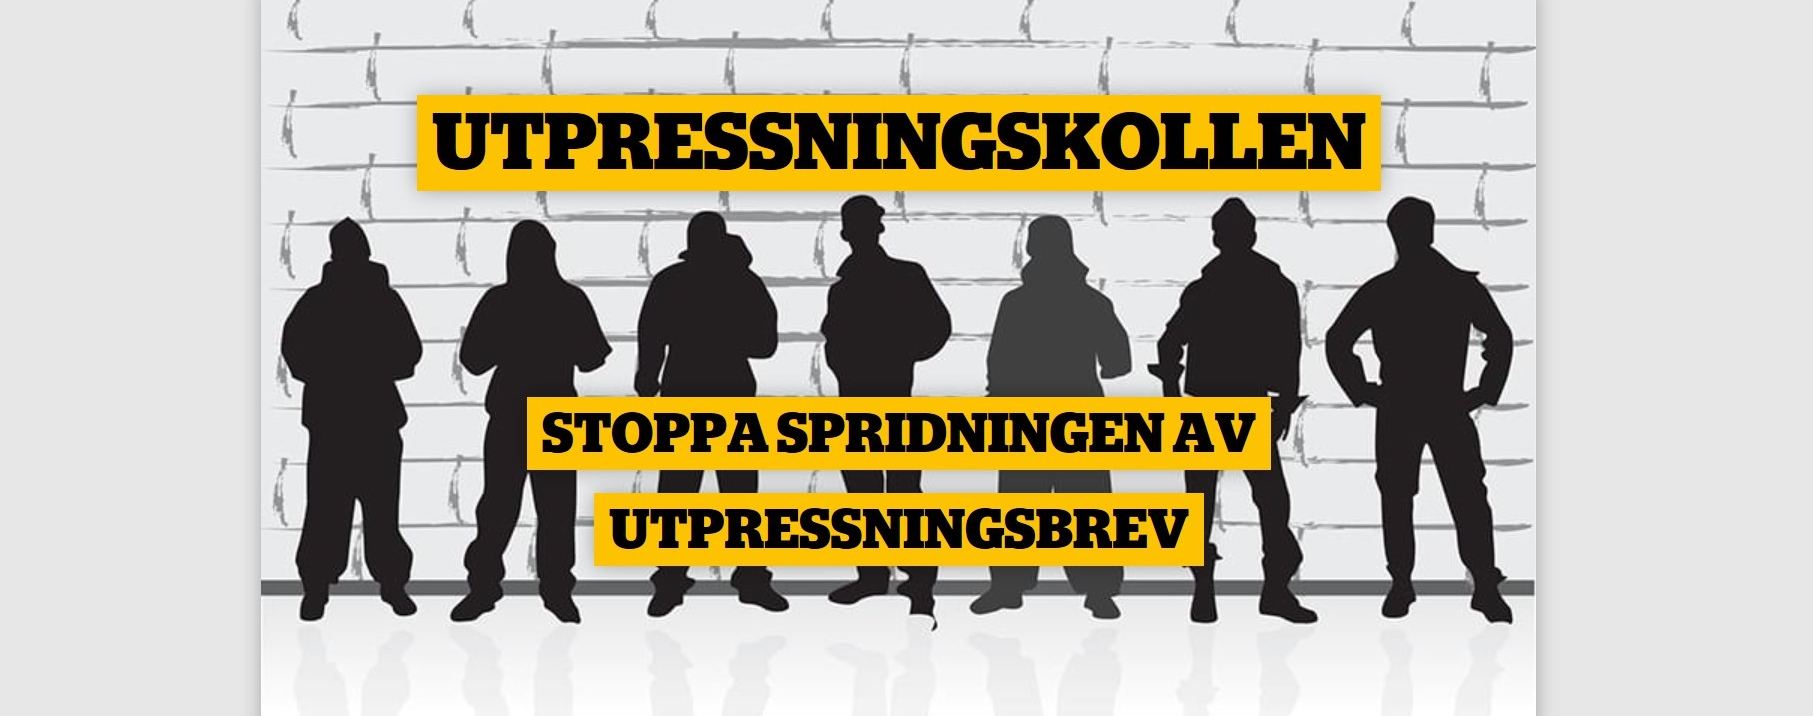 Det svenske piratpartiet ber "opphavsretts troll" om å slutte